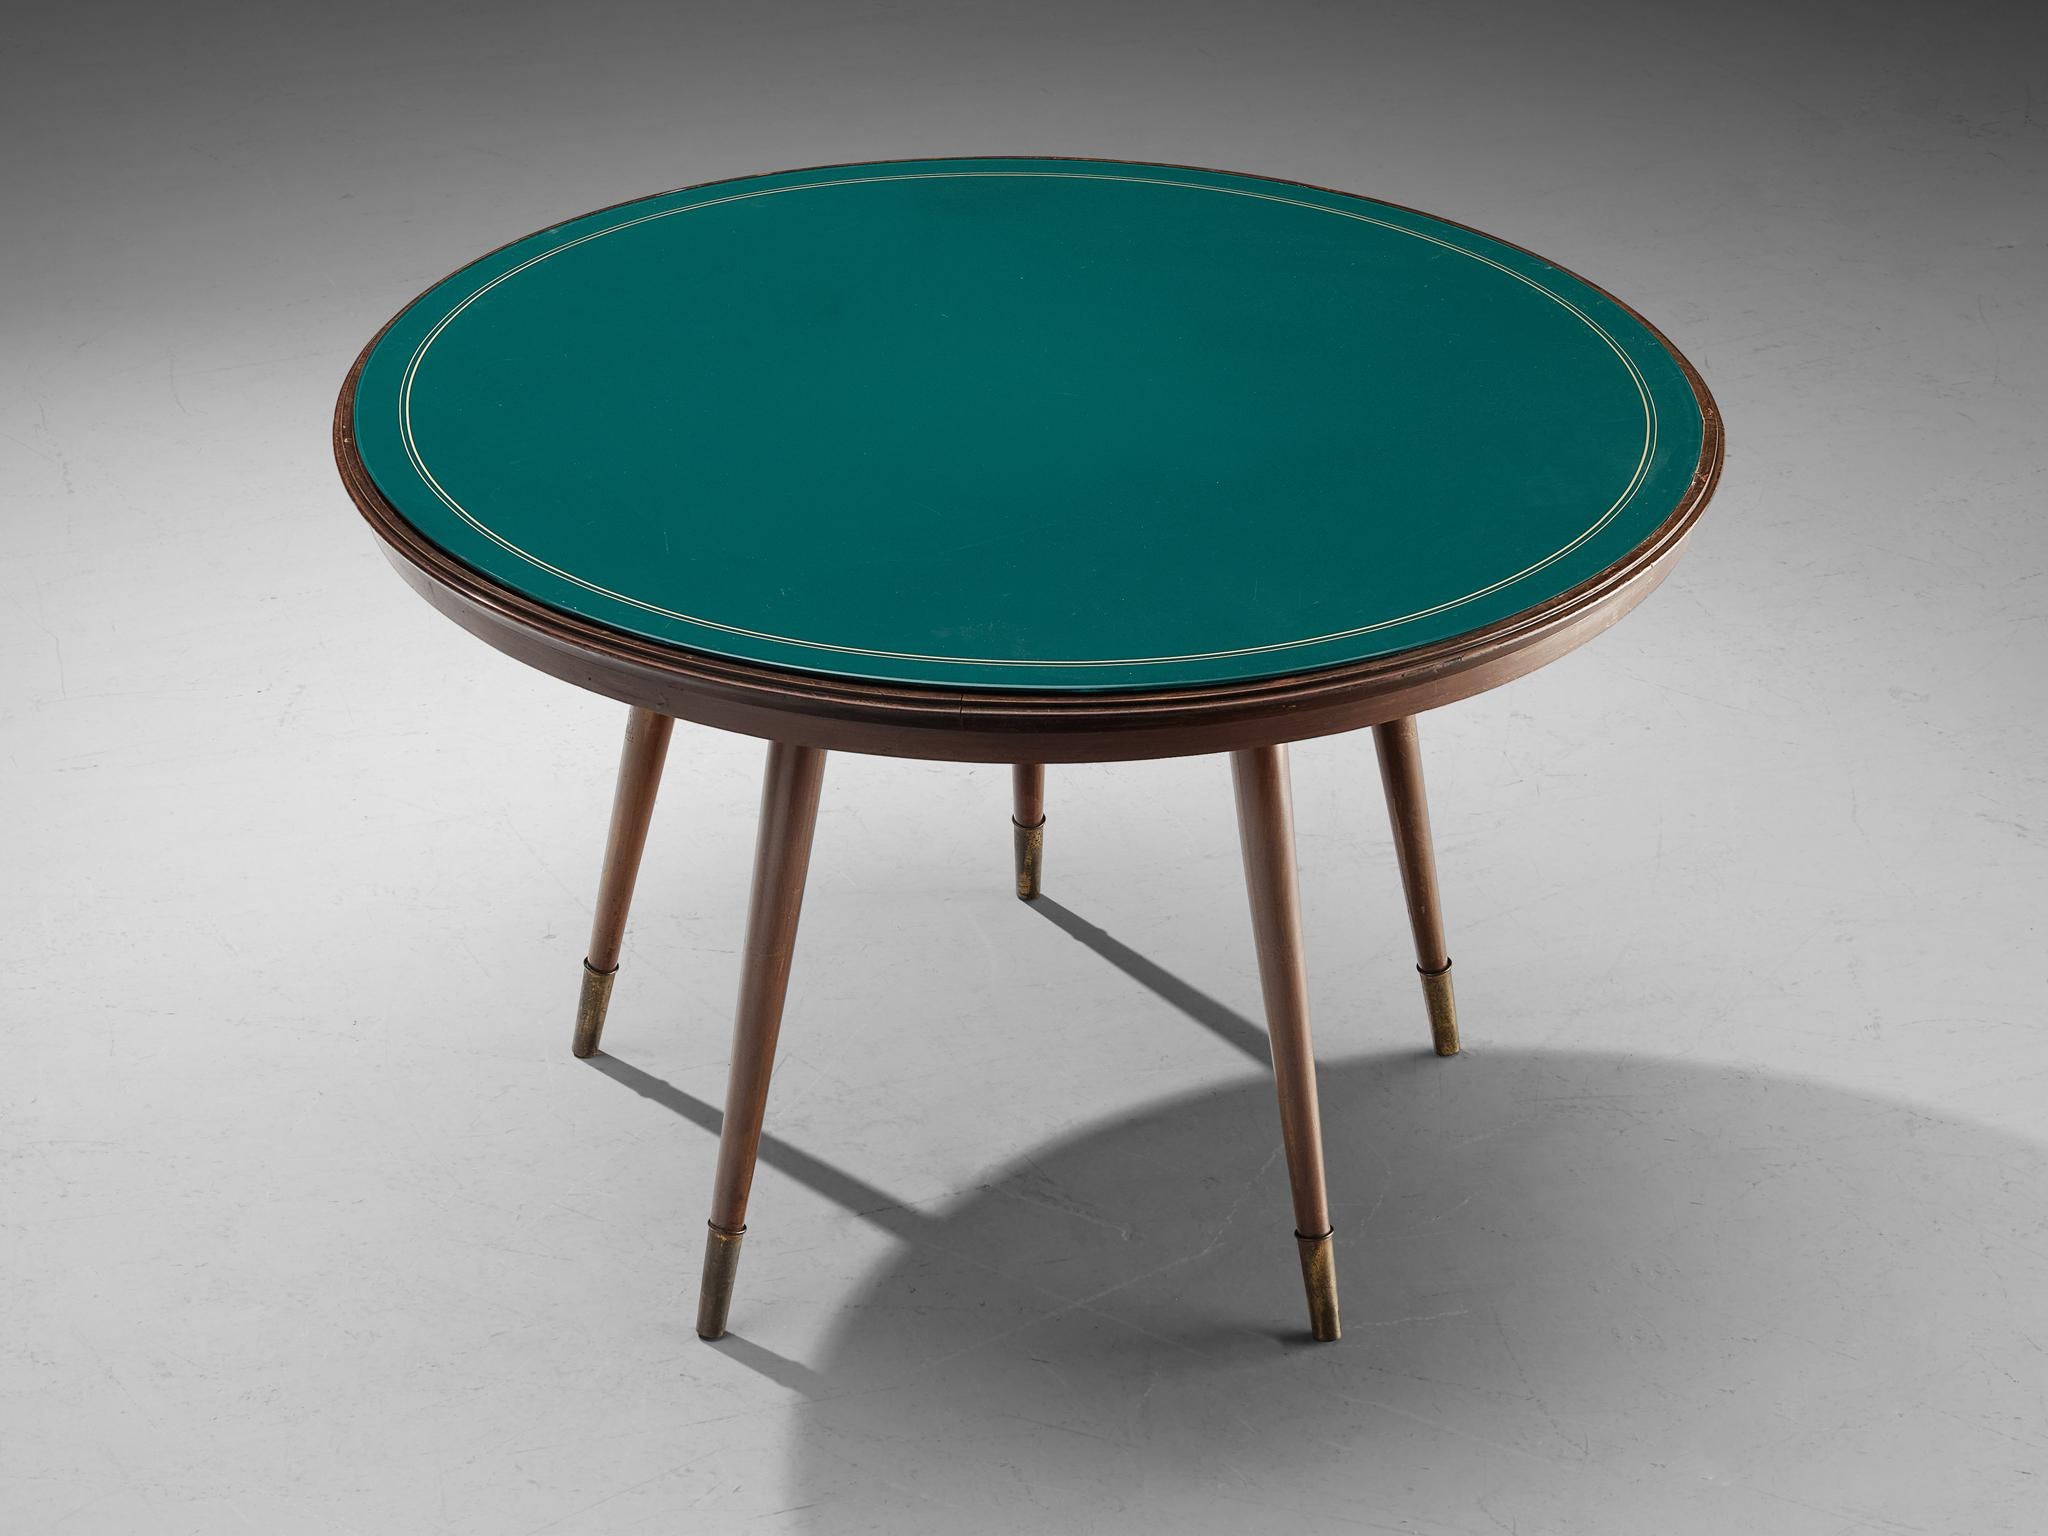 Runder Mittel- oder Esstisch, Holz, Glas, Italien, 1950er Jahre

Eleganter runder Ess- oder Mitteltisch, hergestellt in Italien in den 1950er Jahren. Die Tischplatte ist aus grünem Glas mit kreisförmigen weißen Verzierungen. Die Platte ruht auf fünf